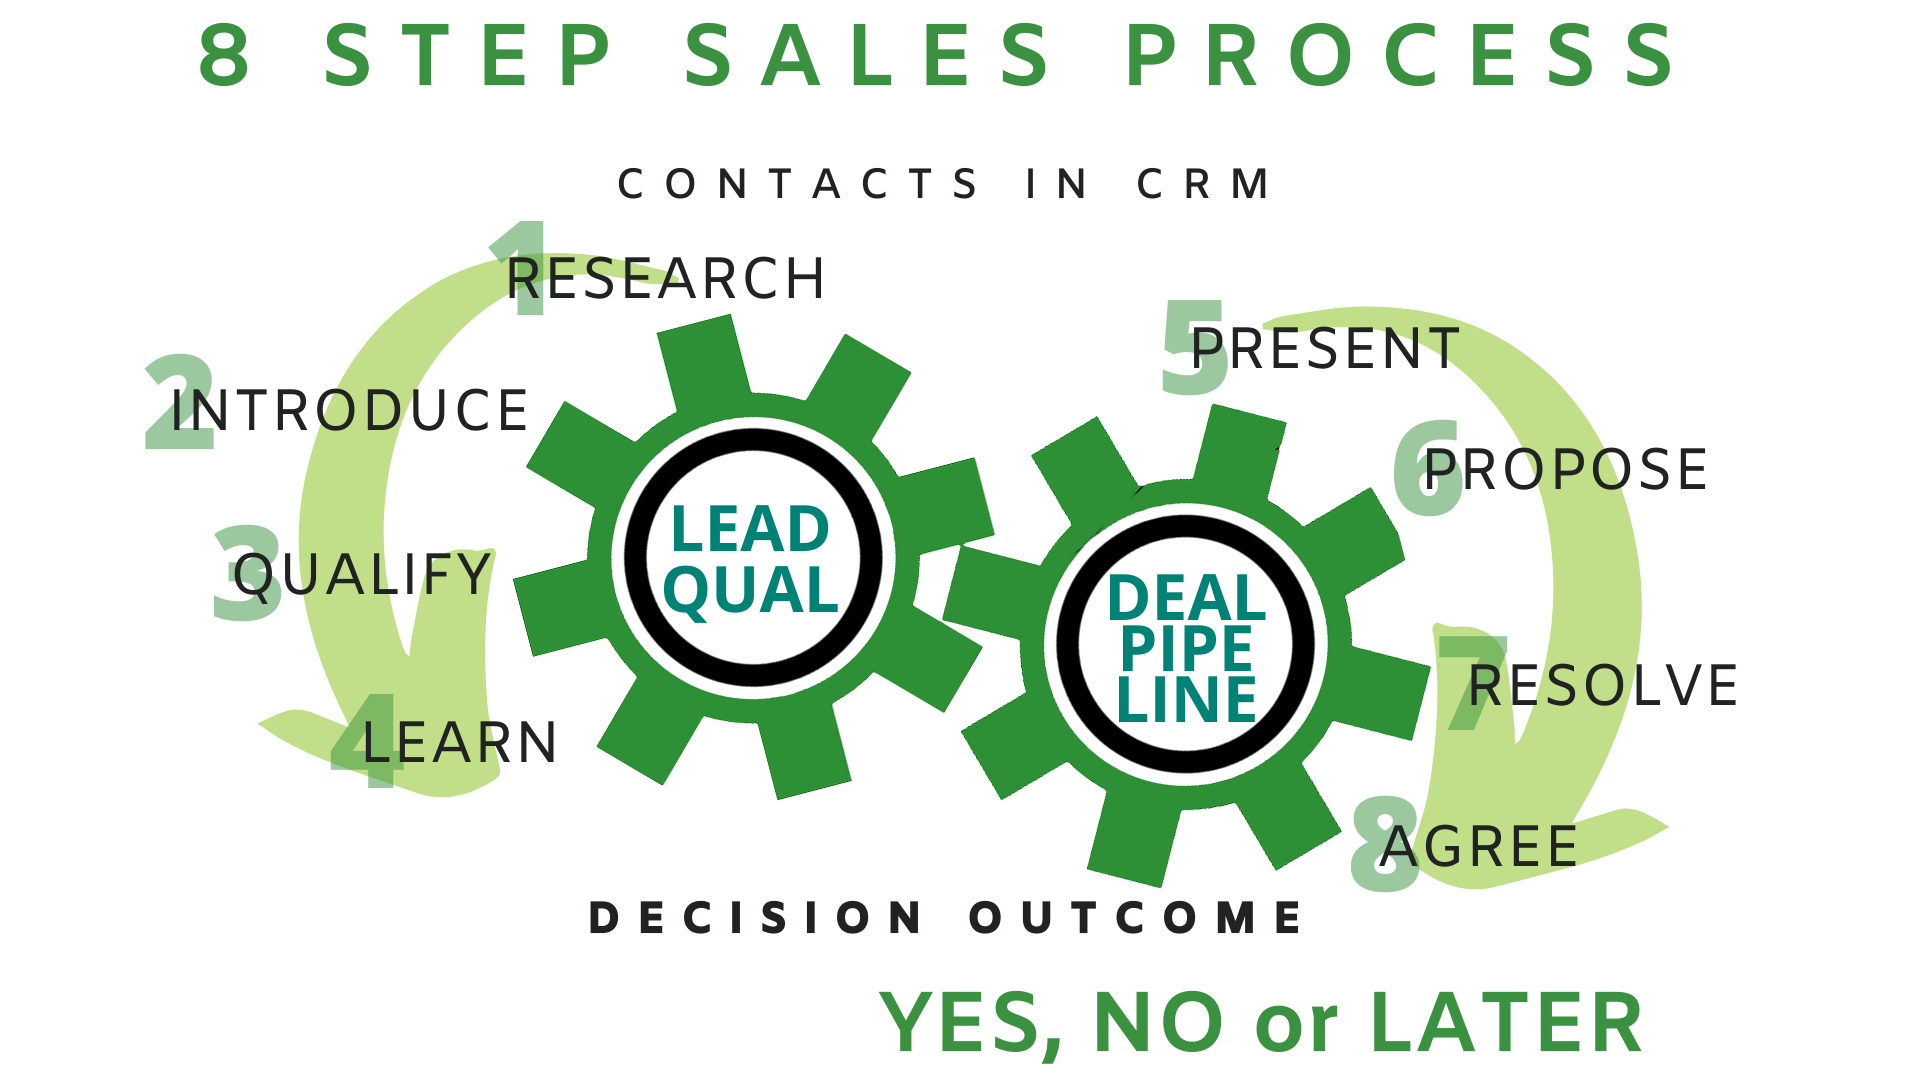 8 step sales process